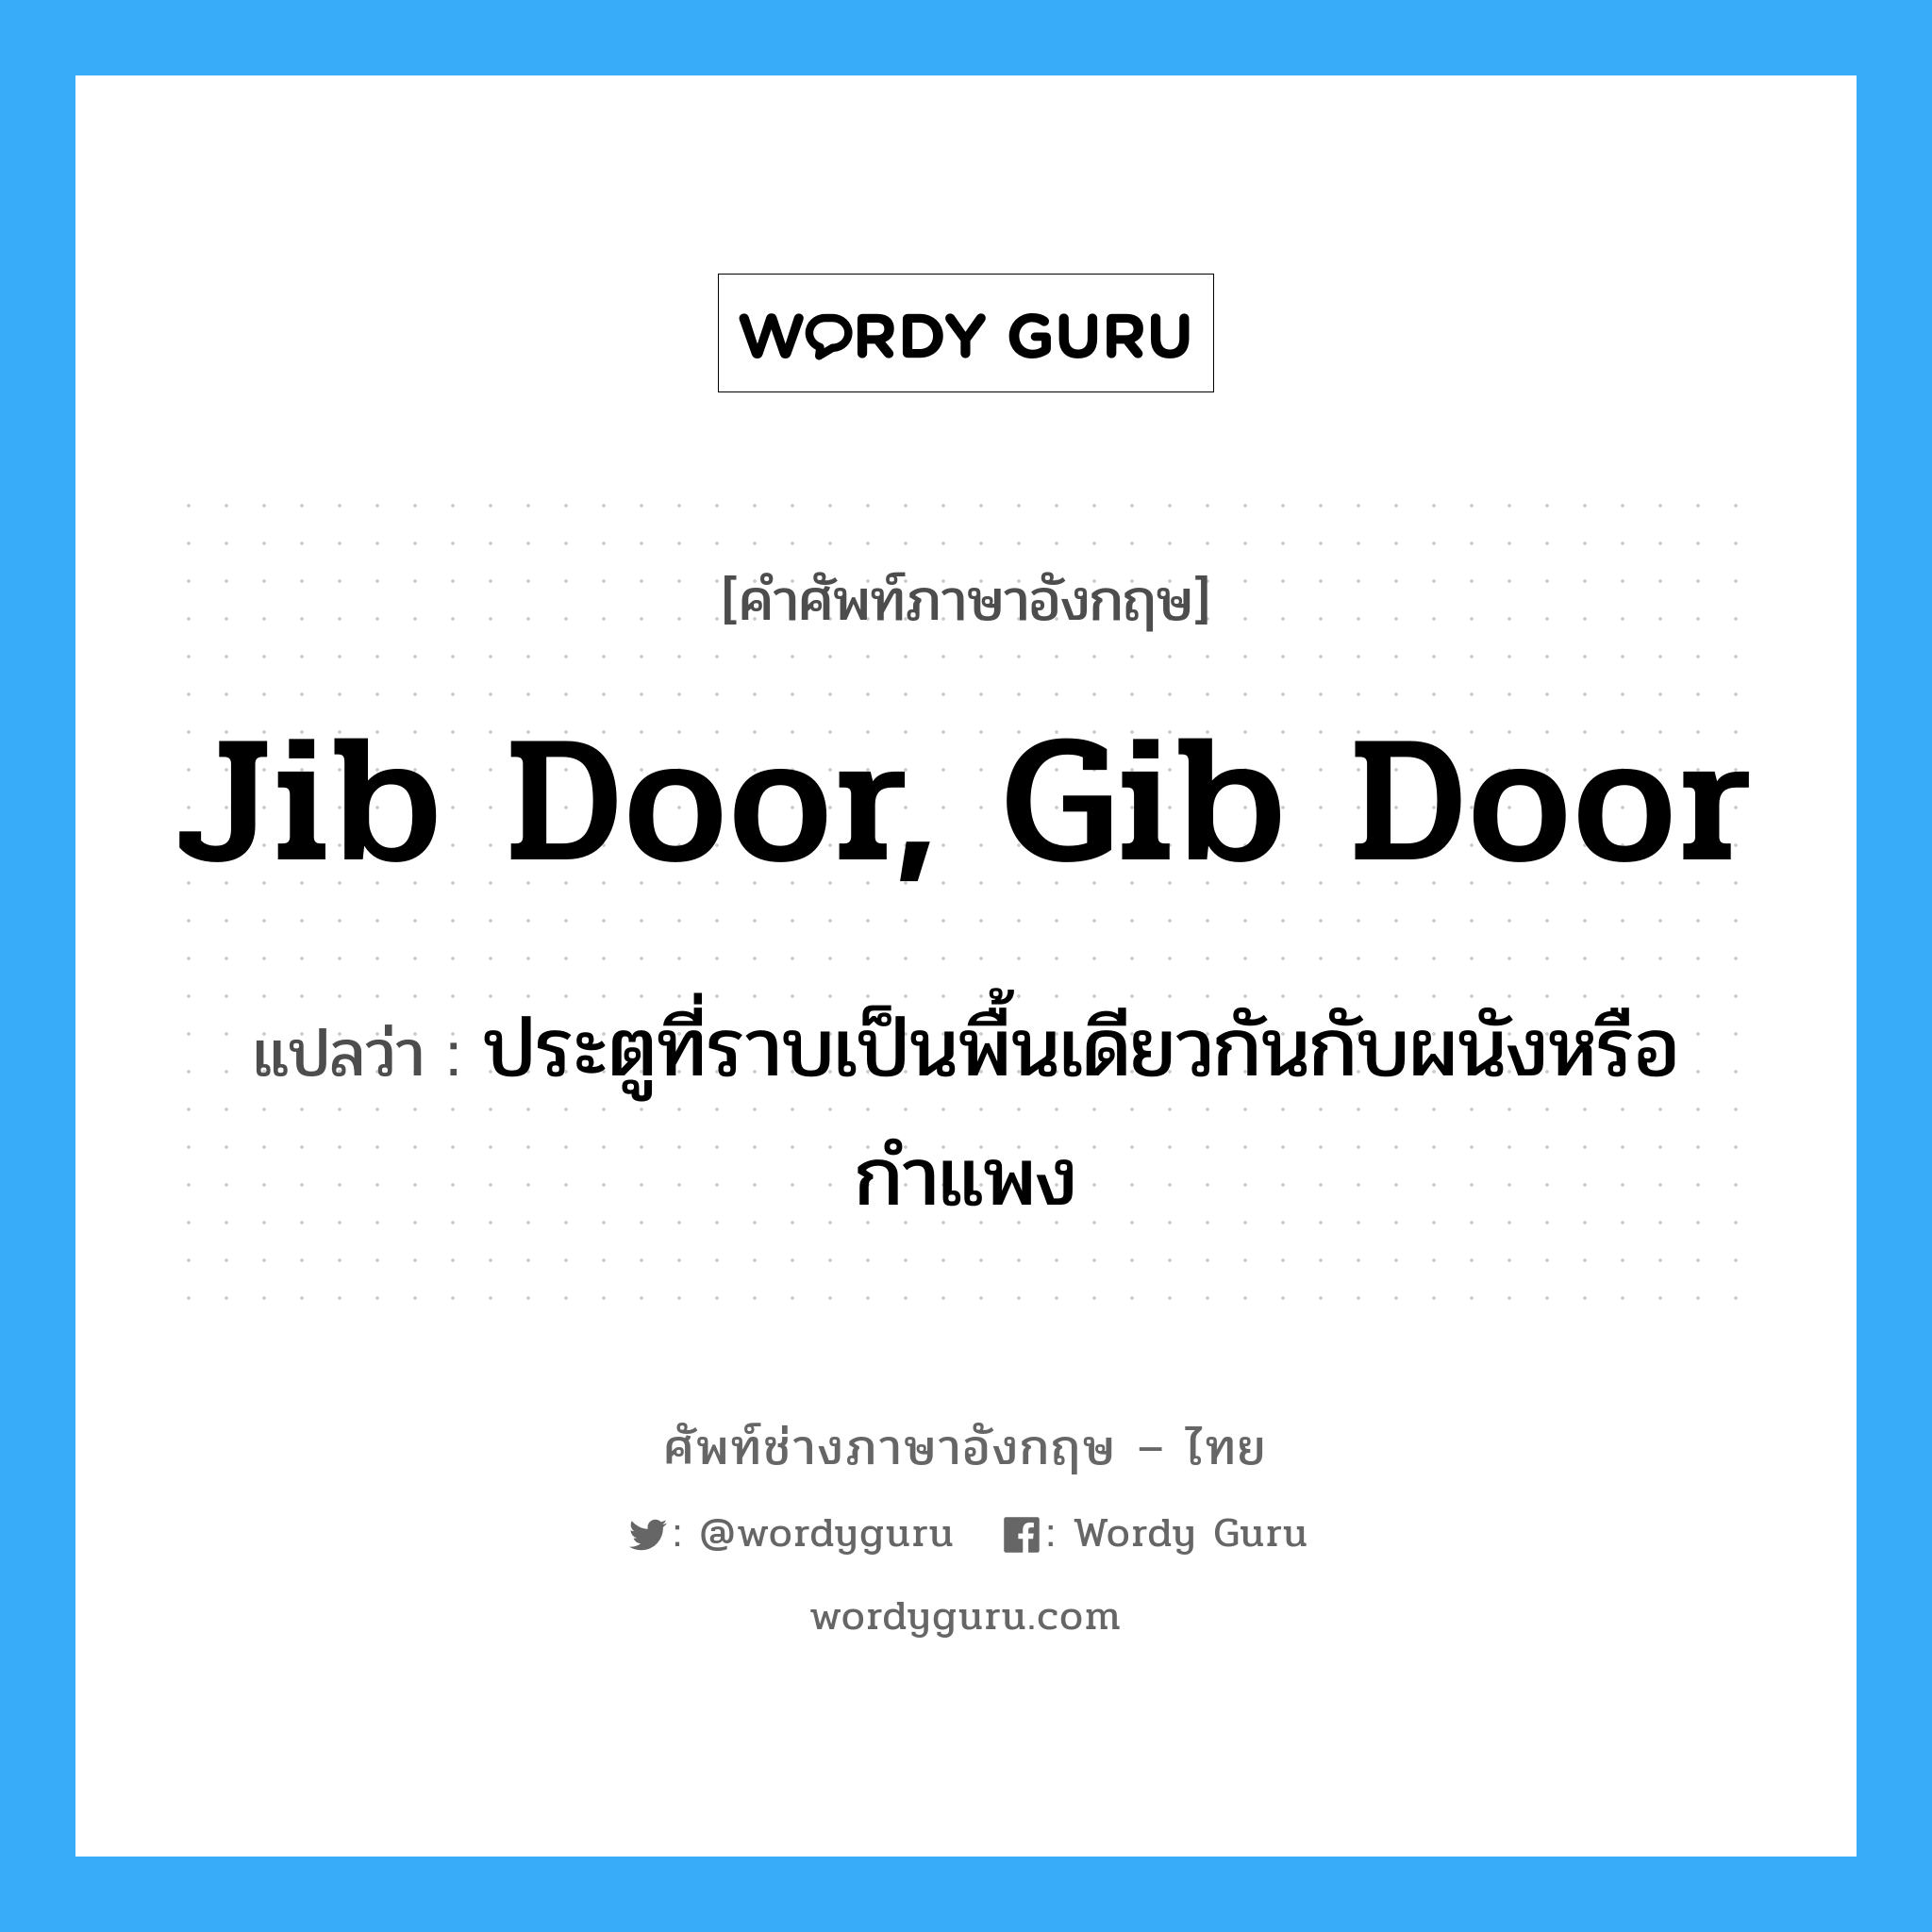 jib door, gib door แปลว่า?, คำศัพท์ช่างภาษาอังกฤษ - ไทย jib door, gib door คำศัพท์ภาษาอังกฤษ jib door, gib door แปลว่า ประตูที่ราบเป็นพื้นเดียวกันกับผนังหรือกำแพง